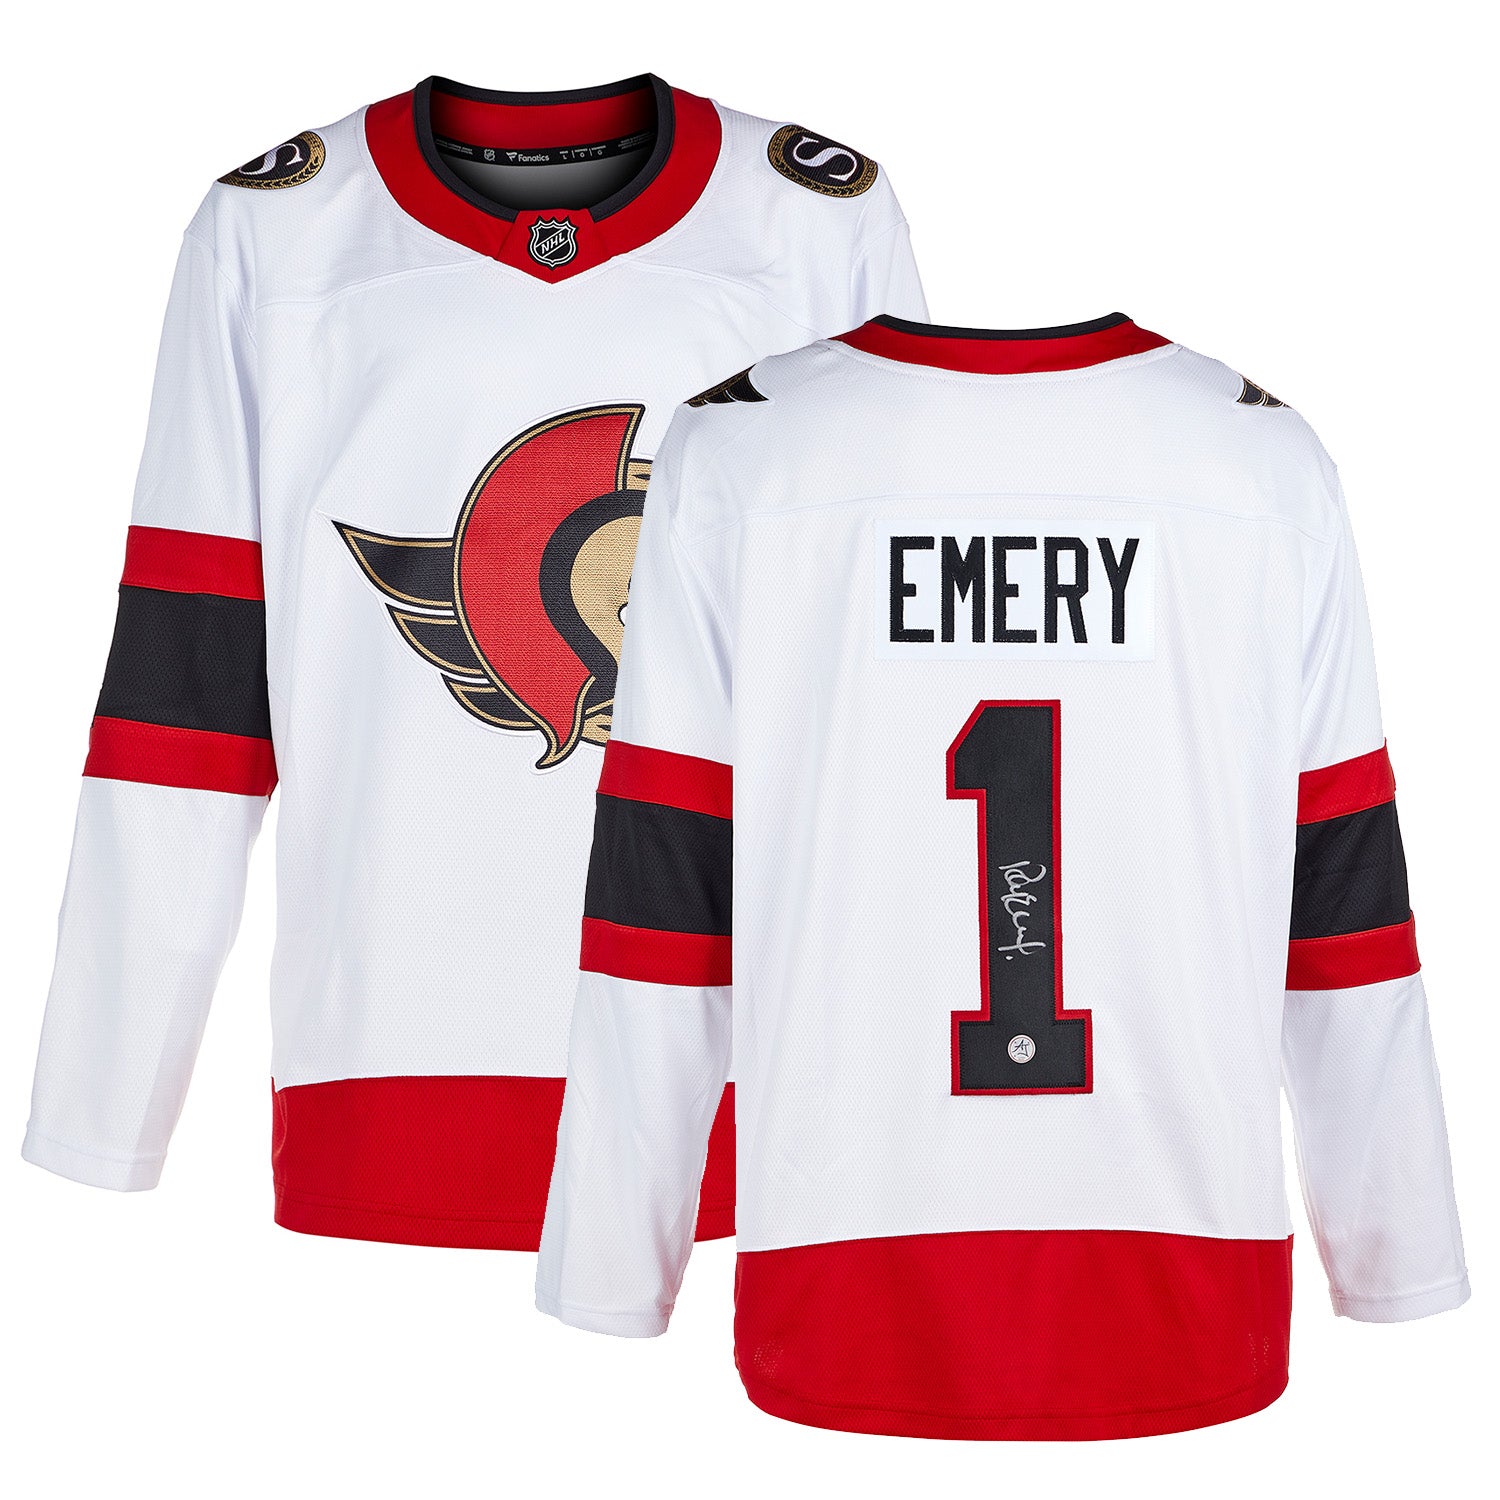 Ray Emery Ottawa Senators Signed White Fanatics Jersey